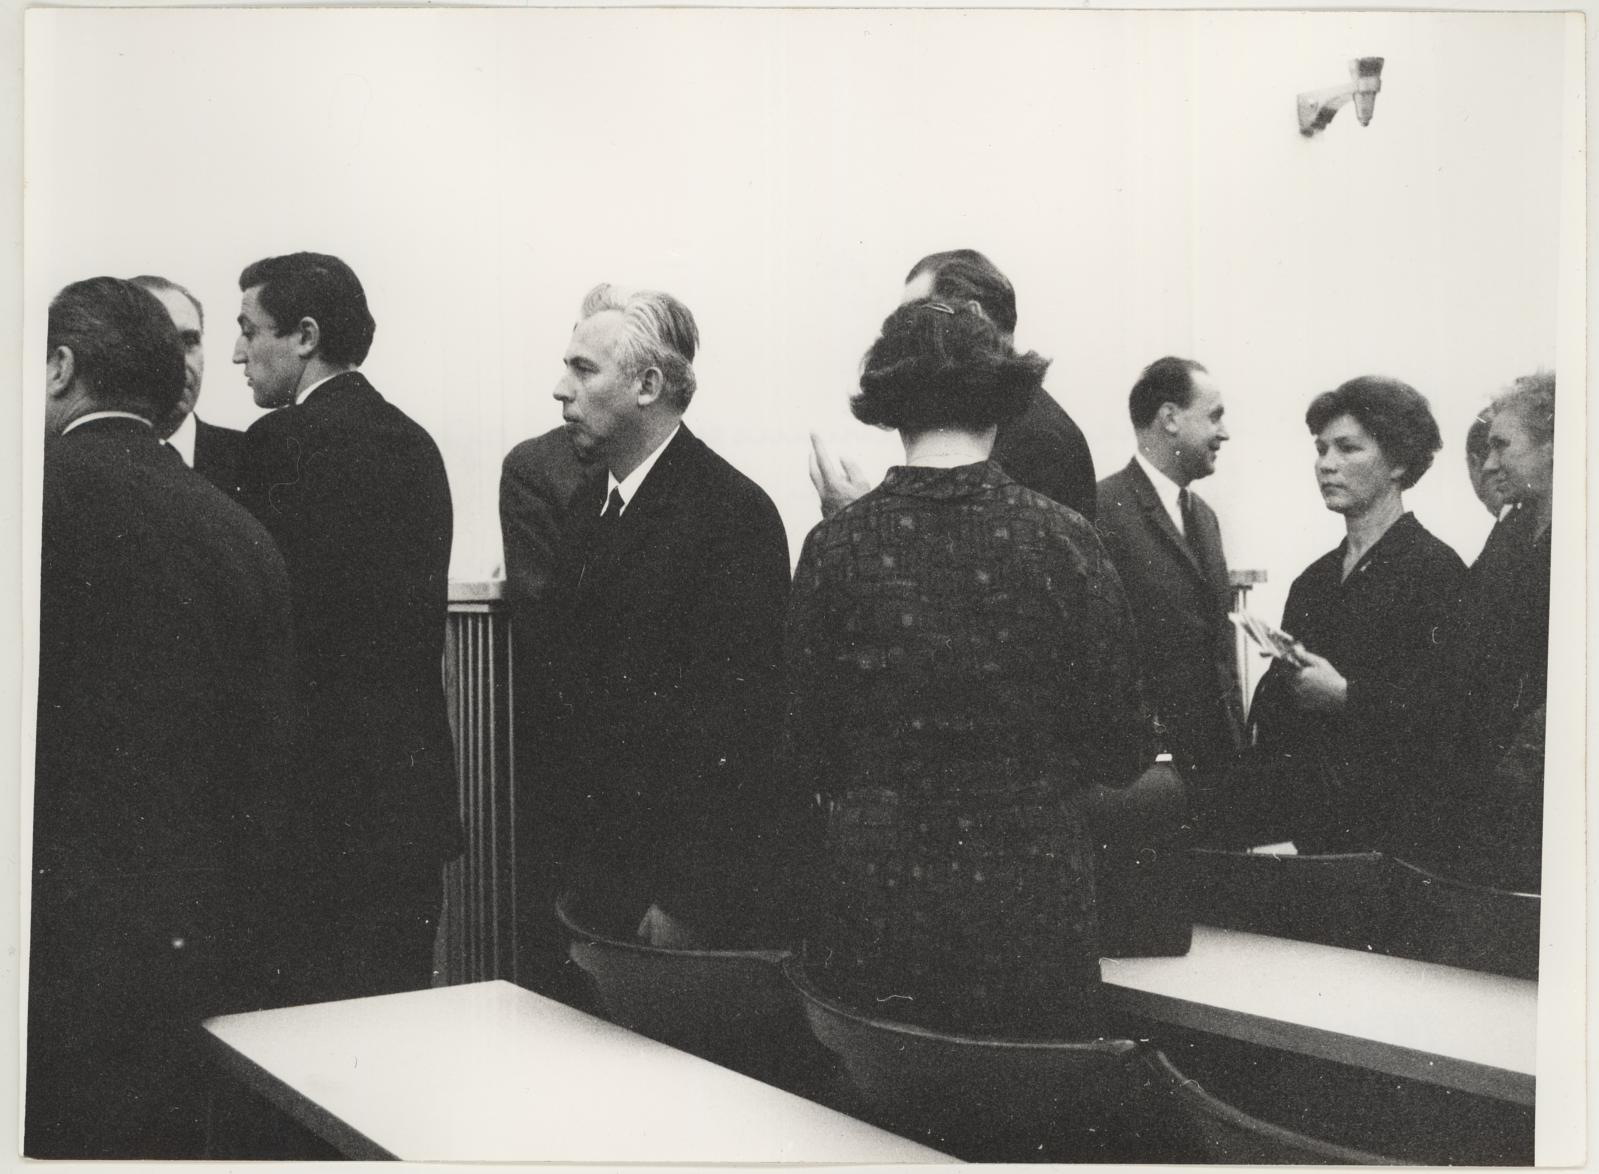 Eesti nõukogude graafika näituse avamine Brno Töölisliikumise Muuseumis 17. nov. 1969. Publikut avamisel. Keskel seisab selgvaates dr. Nina Dvorakova.